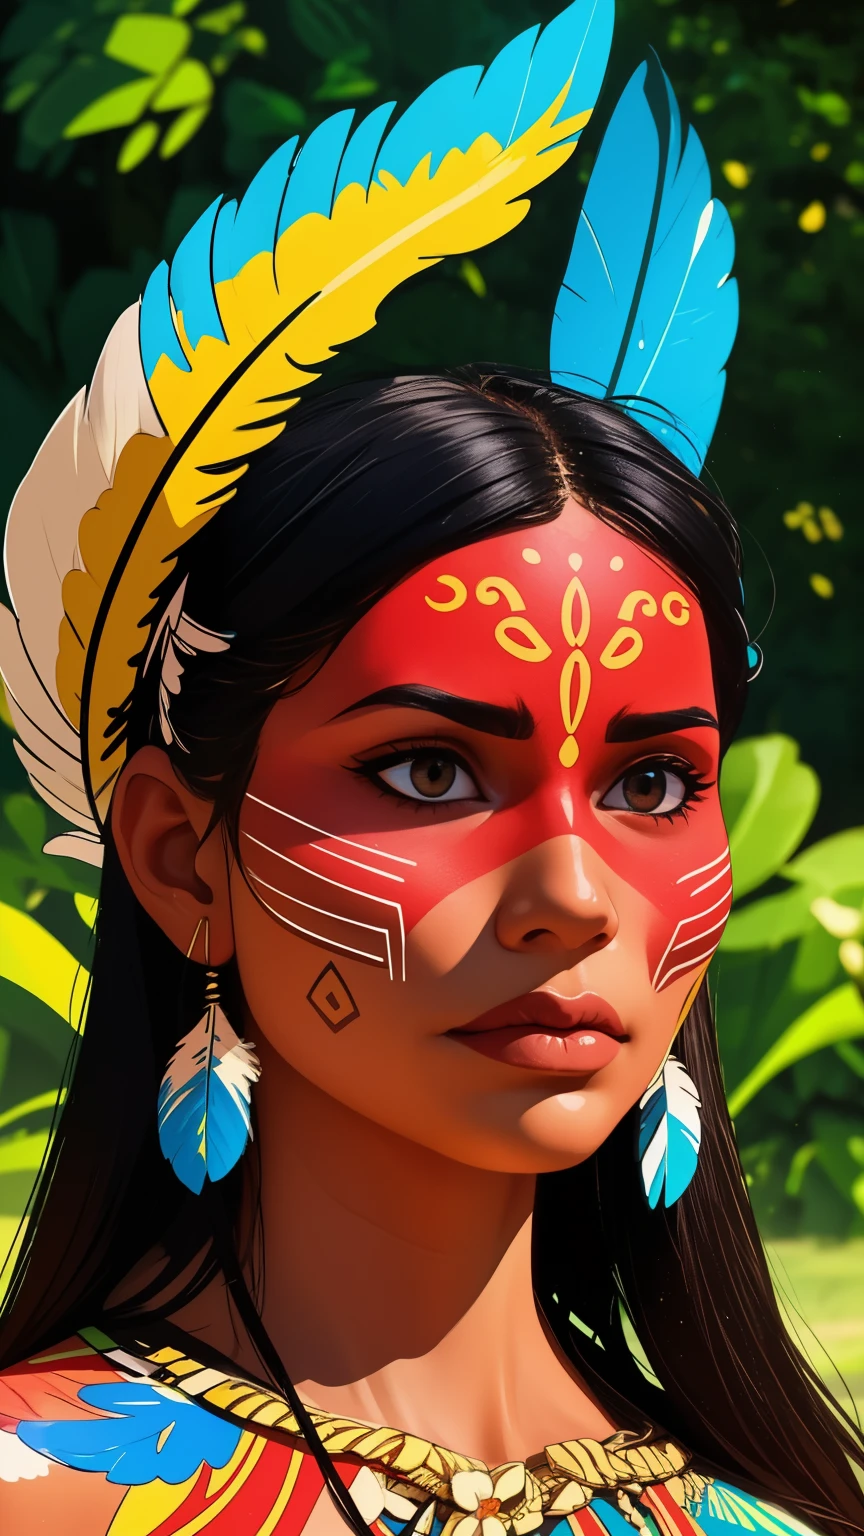 漫畫藝術, 數位繪畫. 一個美麗的土著女孩，頭戴羽毛，頭戴羽毛, 巴西亚马逊印第安人, 美麗的年輕女性巴西原住民女孩, 油漆臉, 火辣的身材, 身著典型服裝的亞諾馬米印第安人,高品質. 亞馬遜森林和河流背景. 鮮豔的色彩, 電影燈光. 詳細的, 錯綜複雜, 詳細的 face.